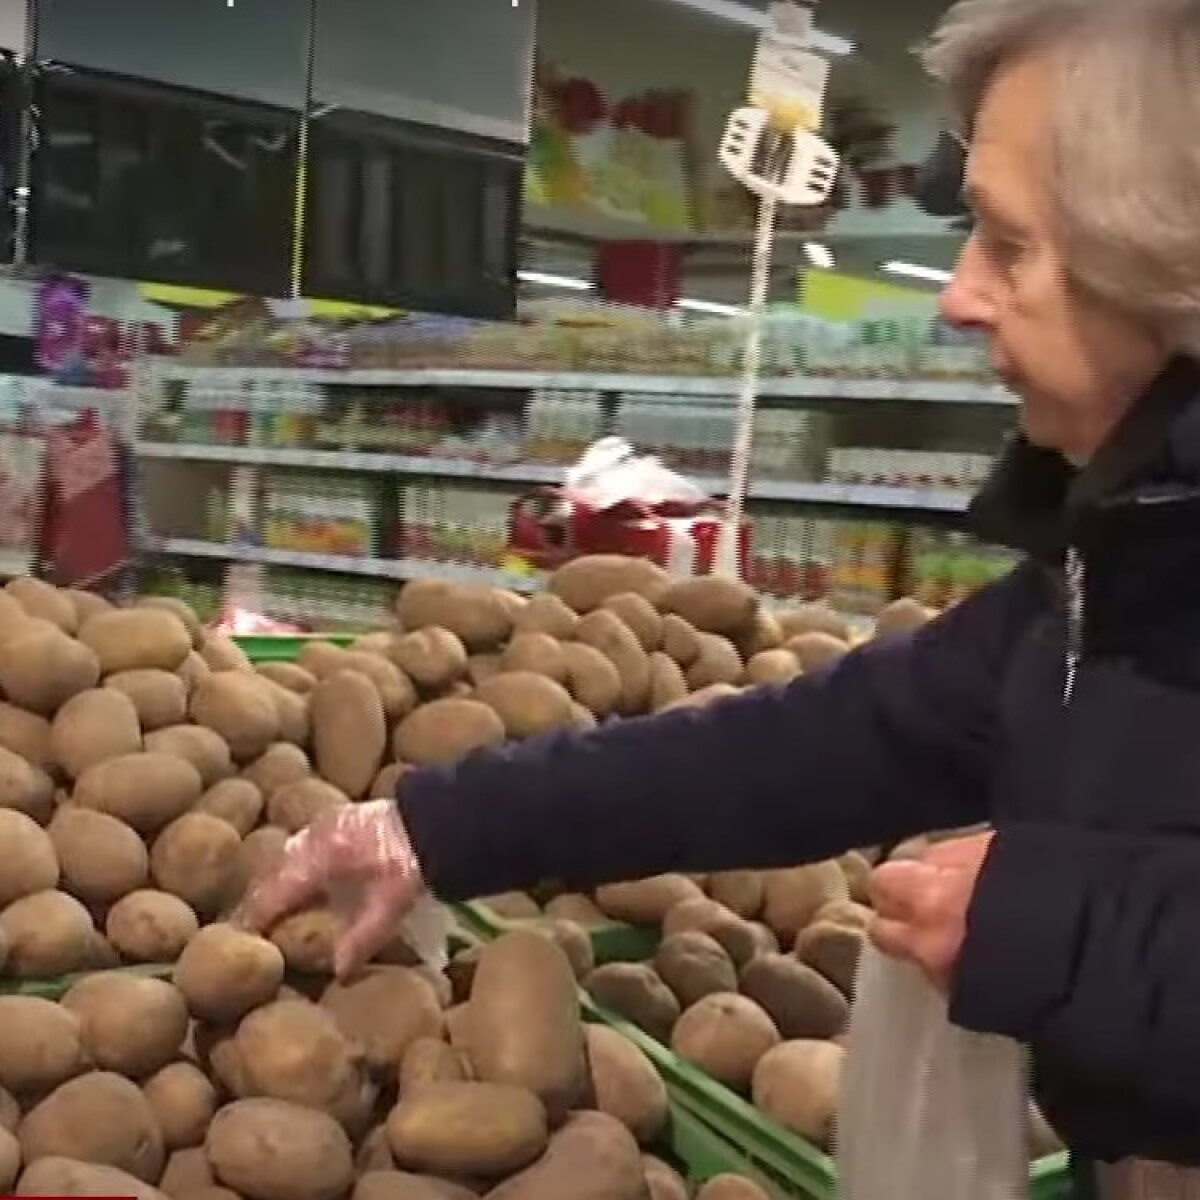 Зараз запаси високоякісної картоплі в господарствах України дуже обмежені.